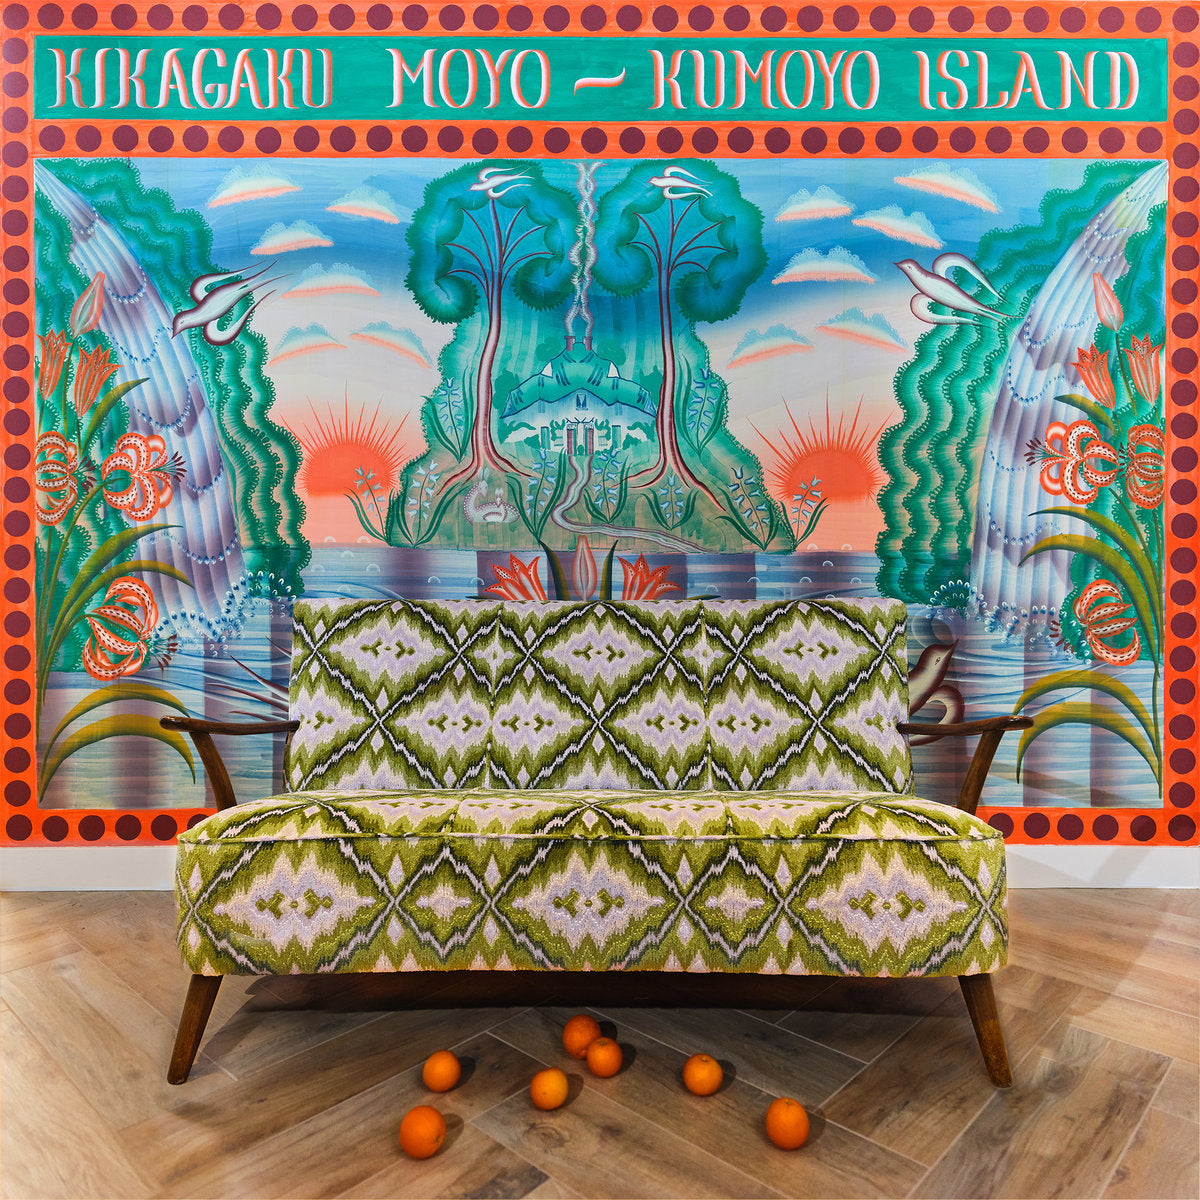 Kikagaku Moyo - Kumoyo Island | Vinyl LP